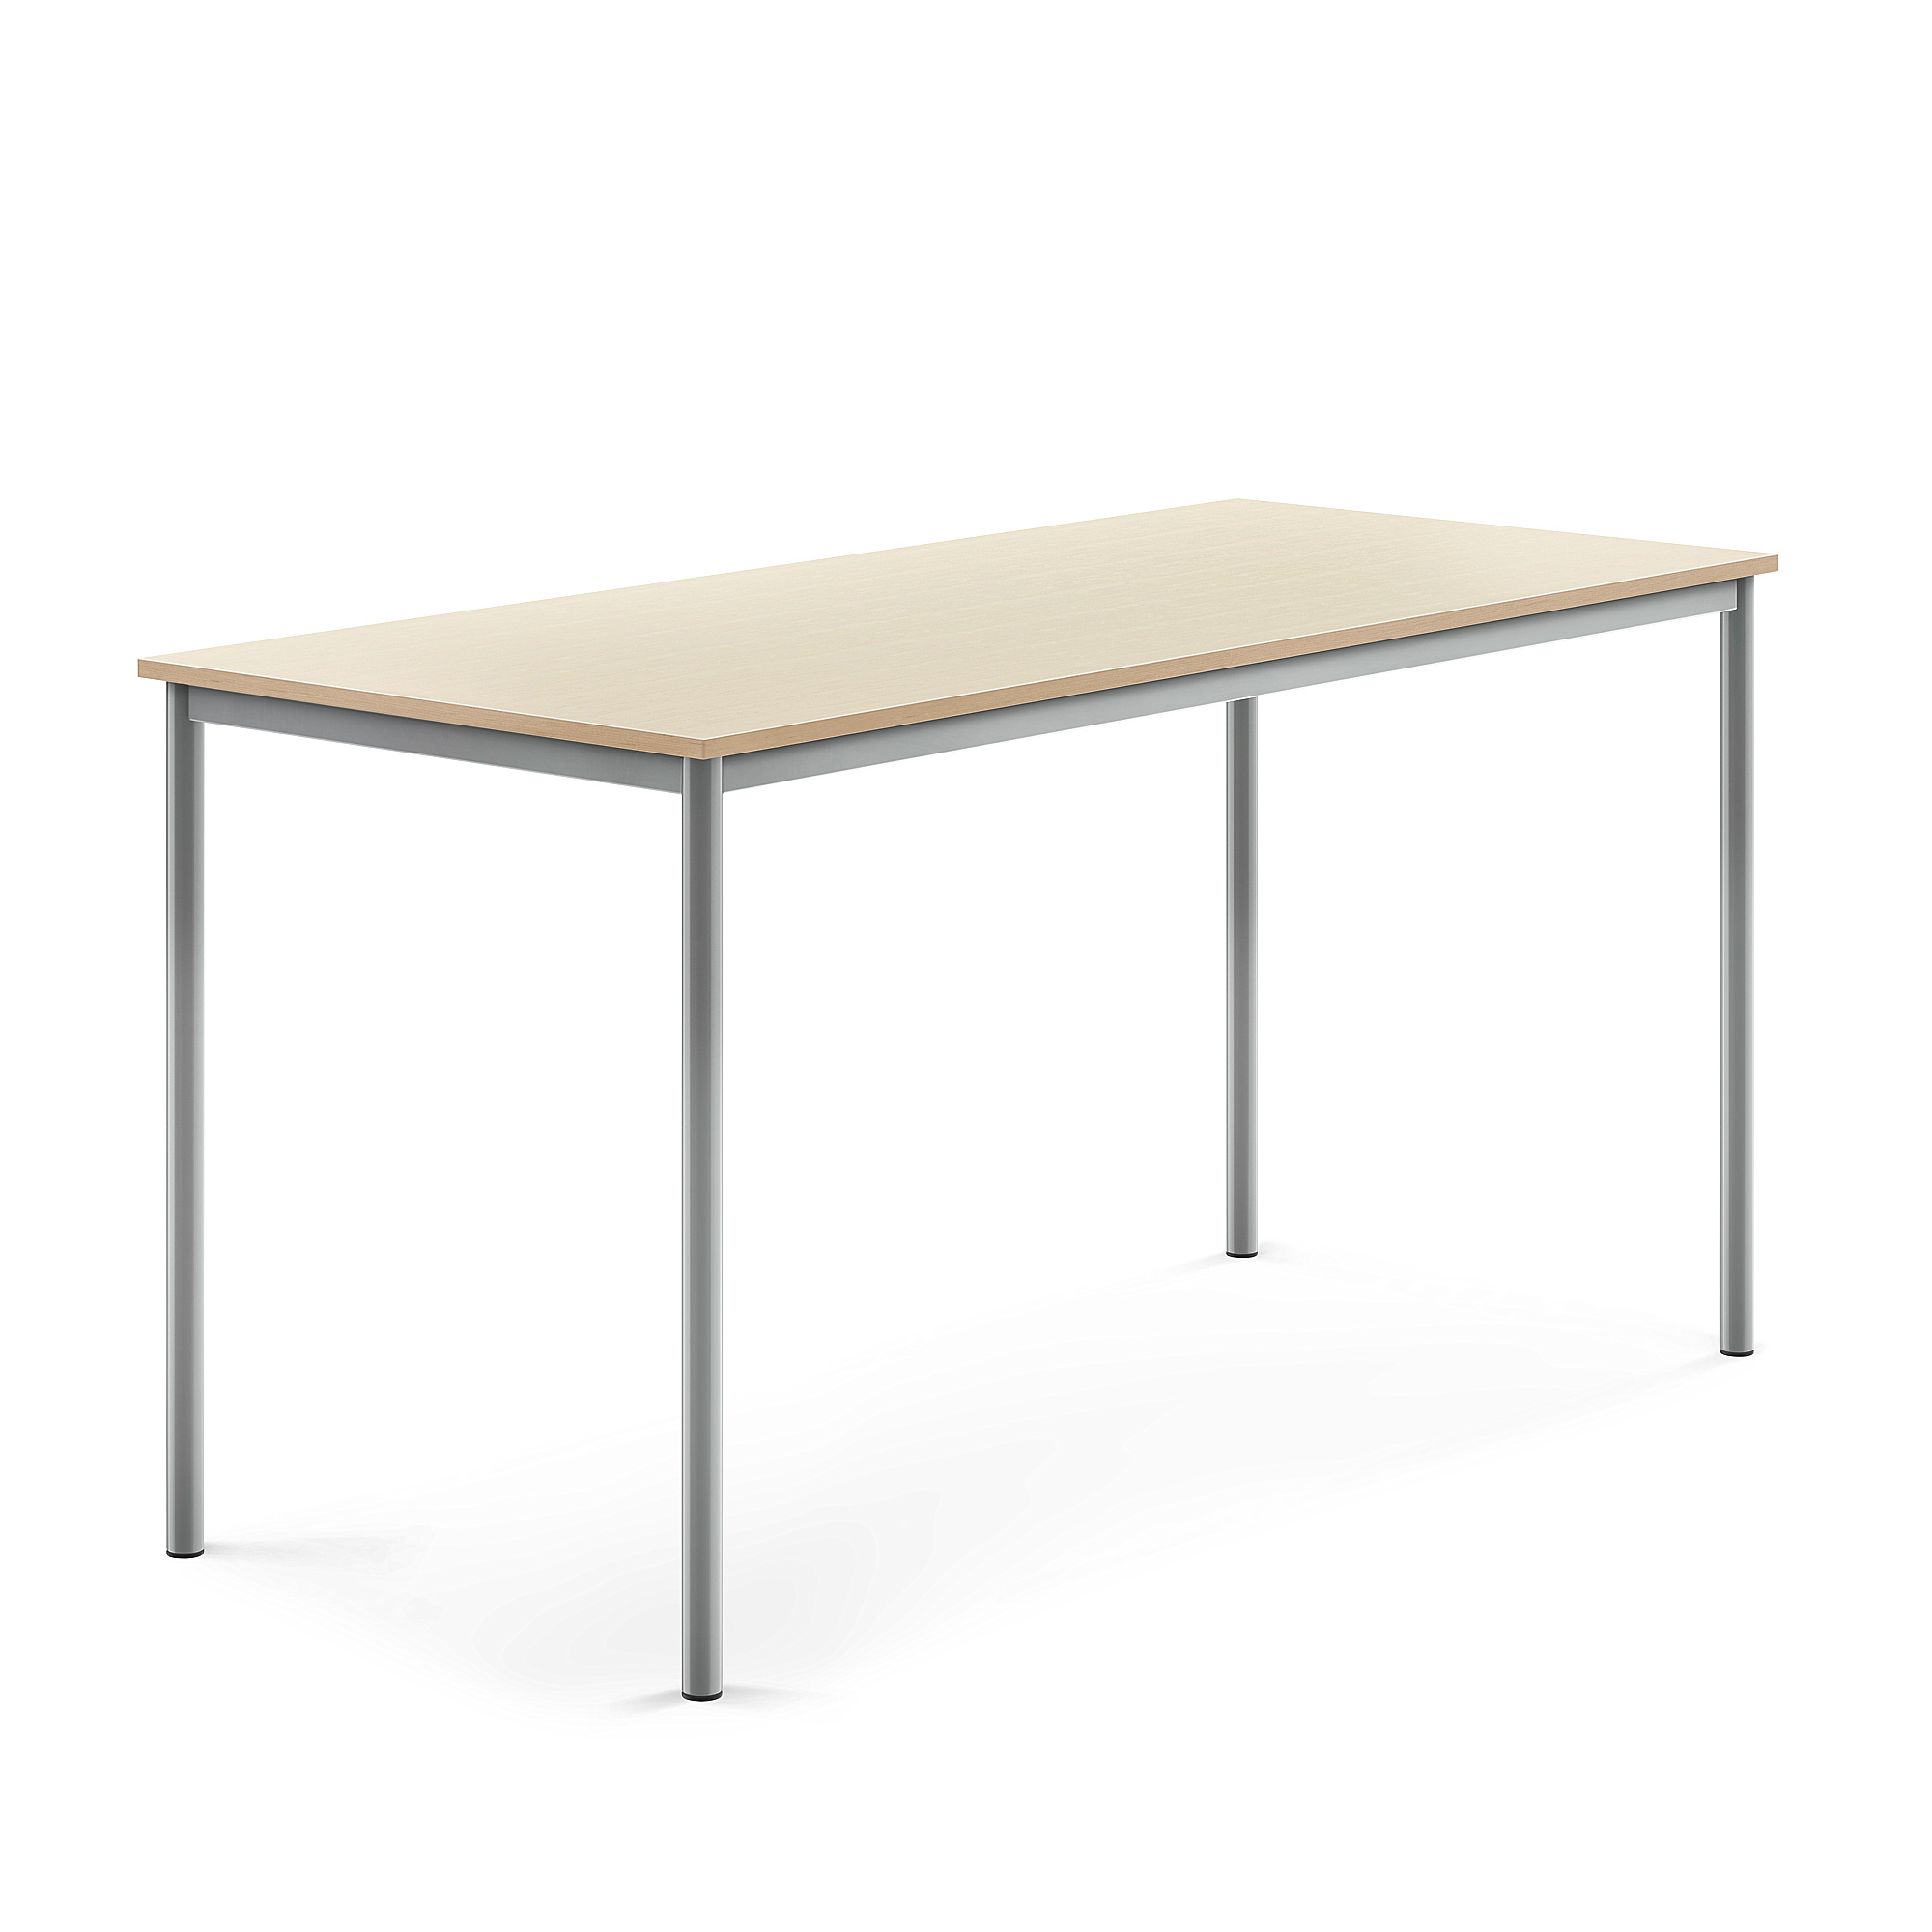 Stůl BORÅS, 1800x800x900 mm, stříbrné nohy, HPL deska, bříza